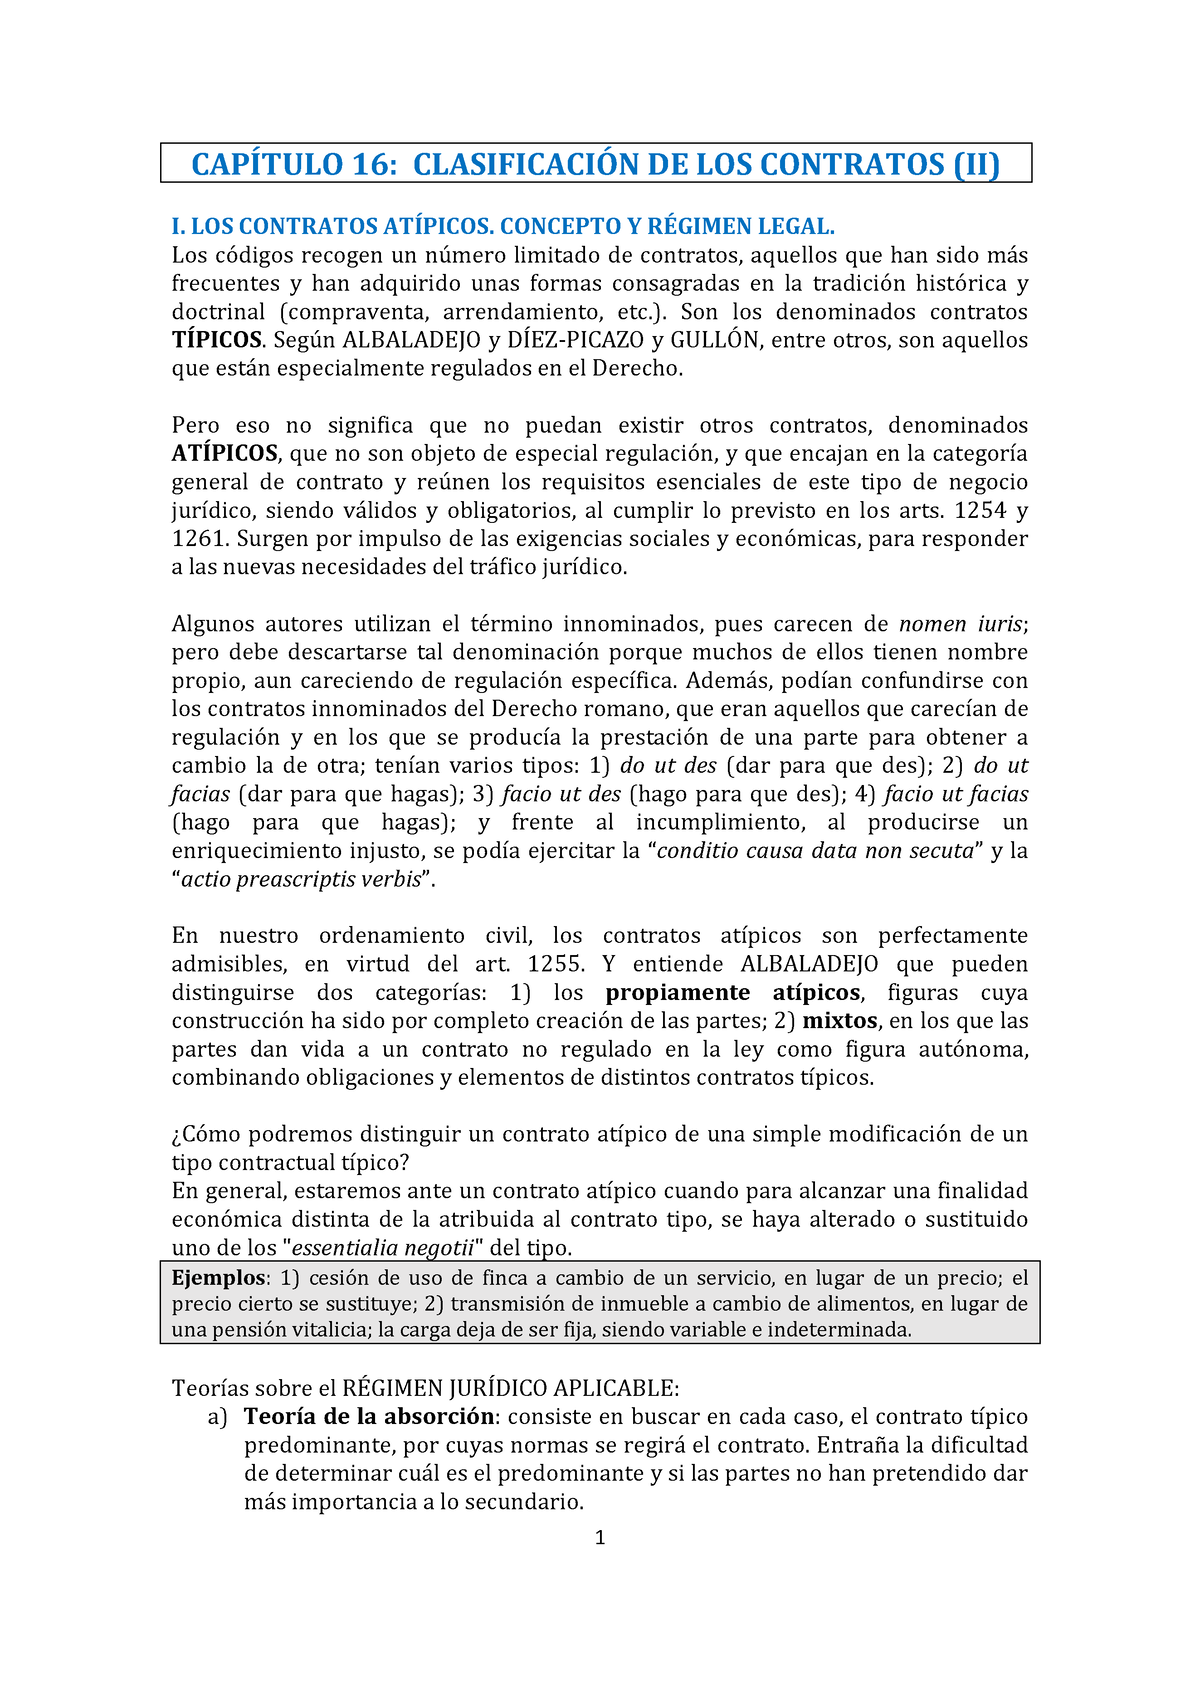 Tema 53 Clasificación De Los Contratos Ii CapÍtulo 16 ClasificaciÓn De Los Contratos Ii 7866